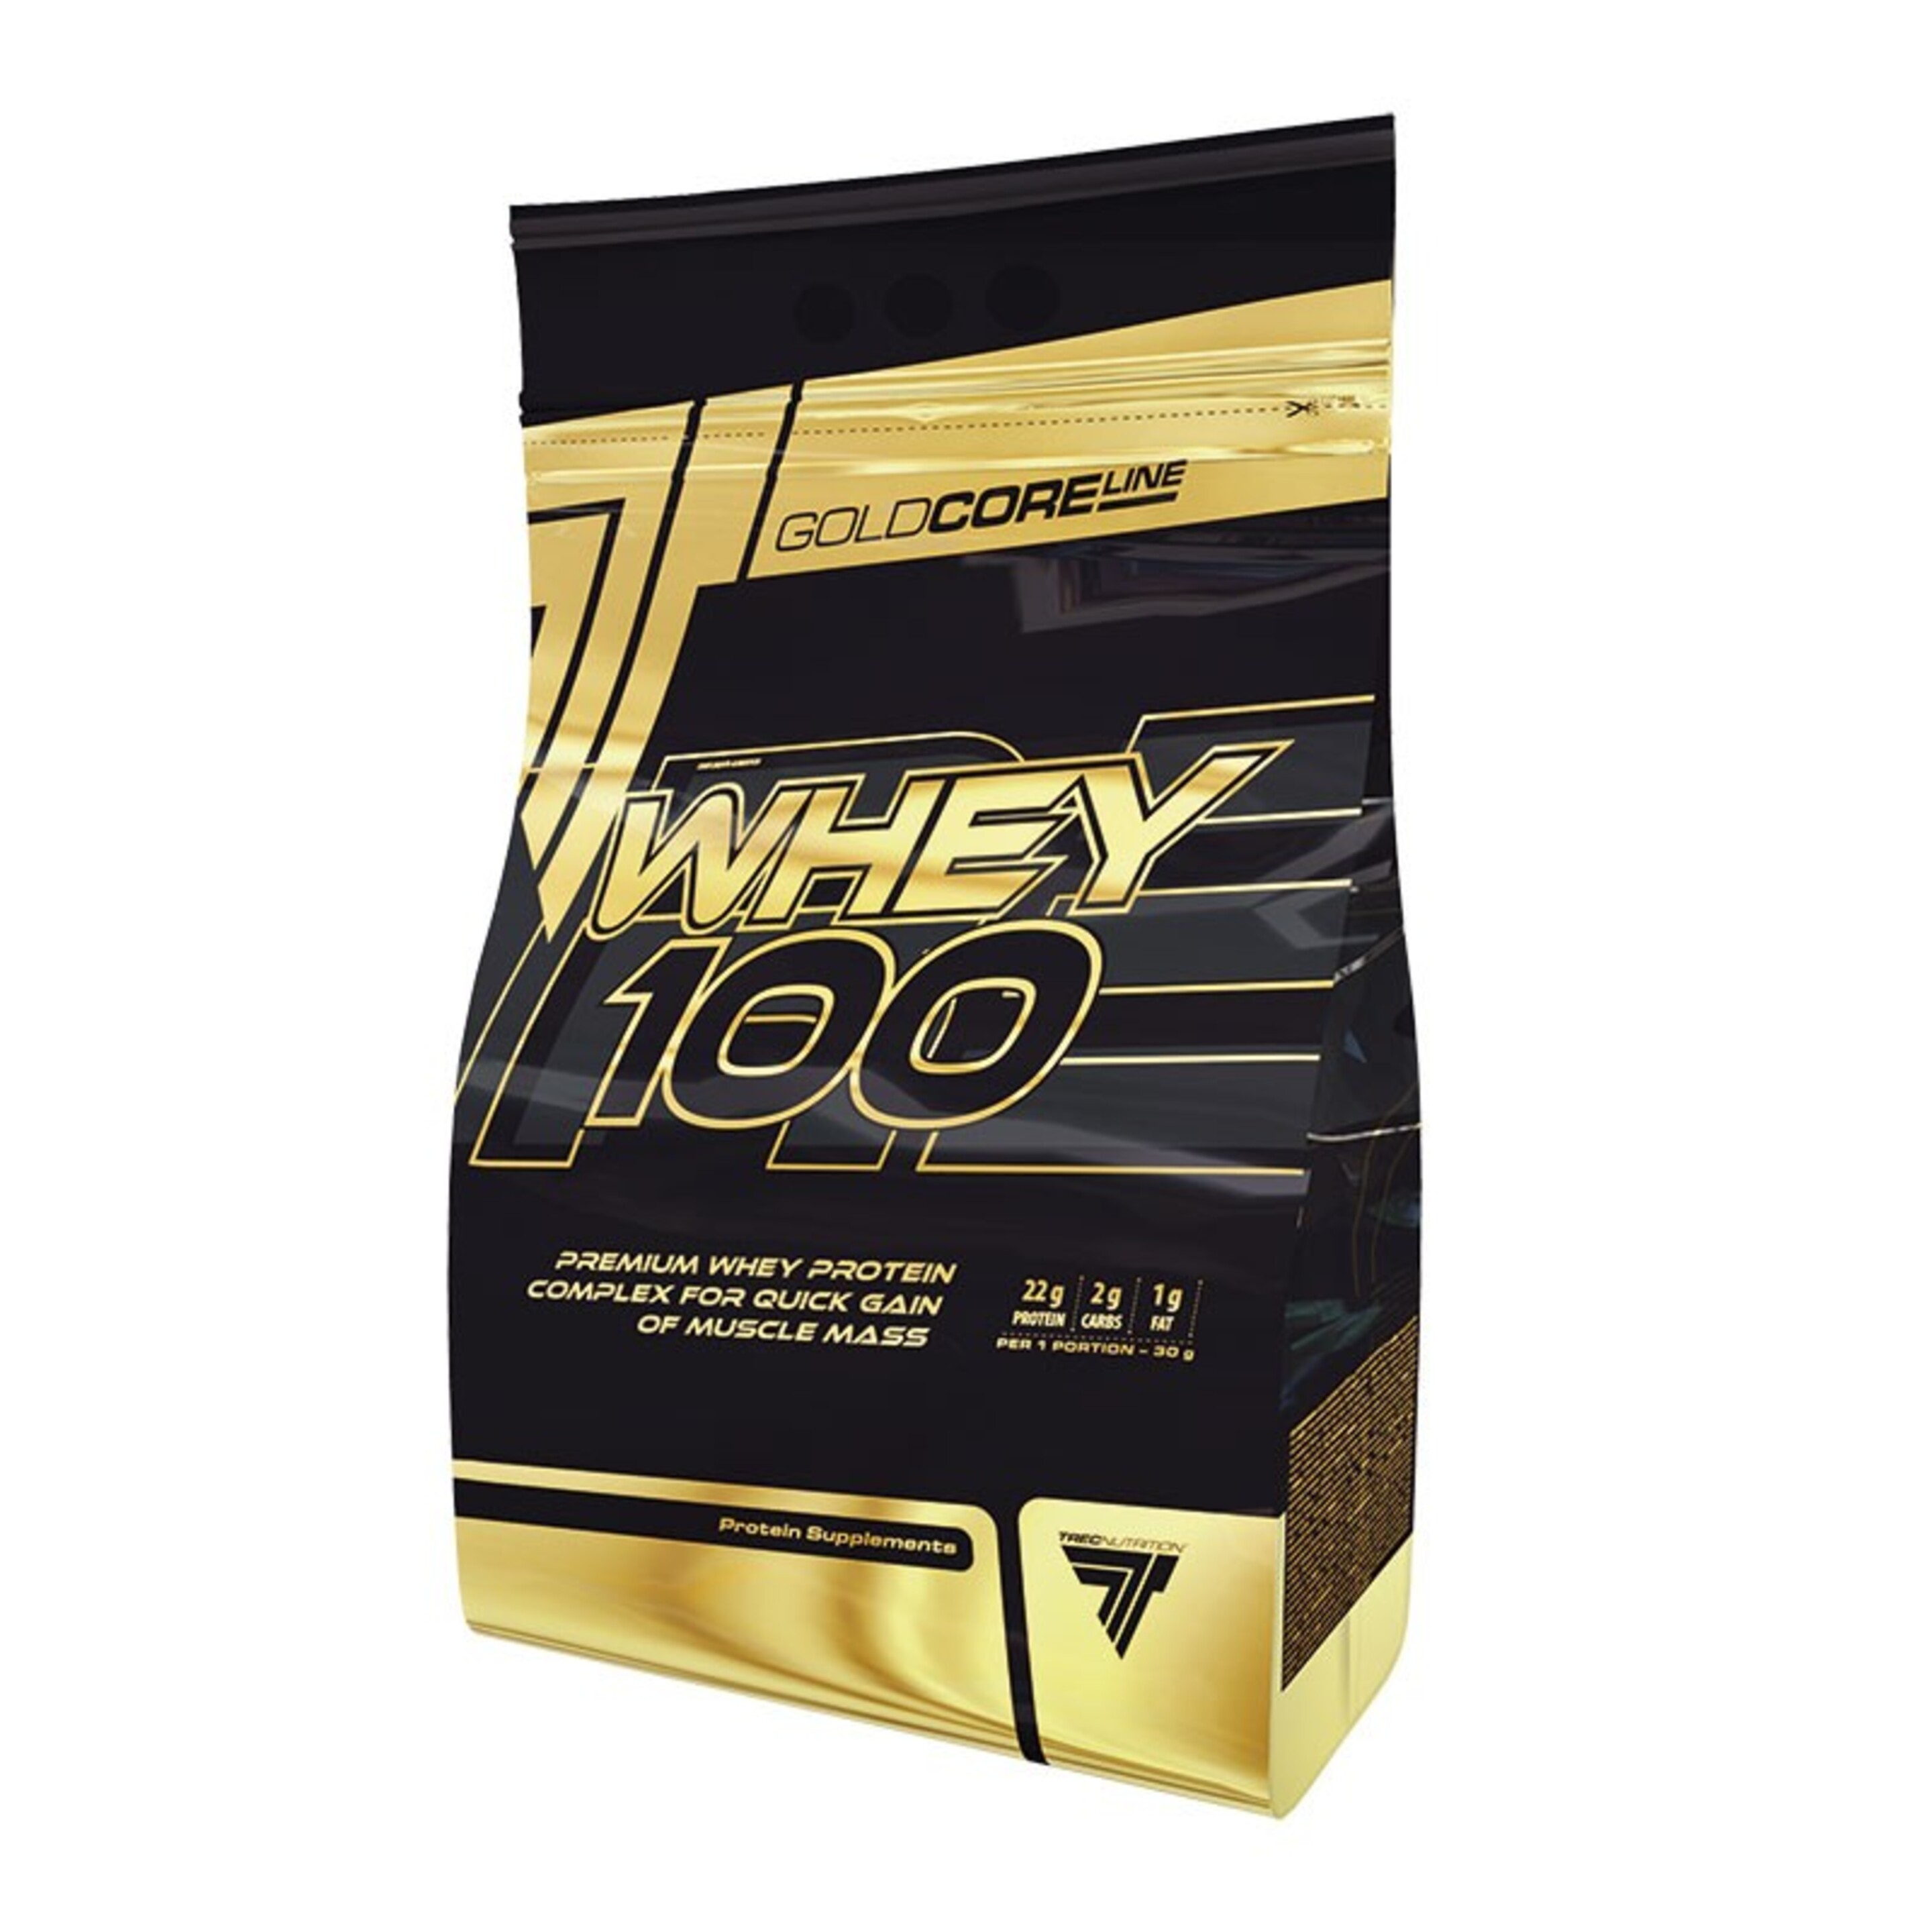 Gold Core Whey 100 - 2275g - Chocolate  MKP